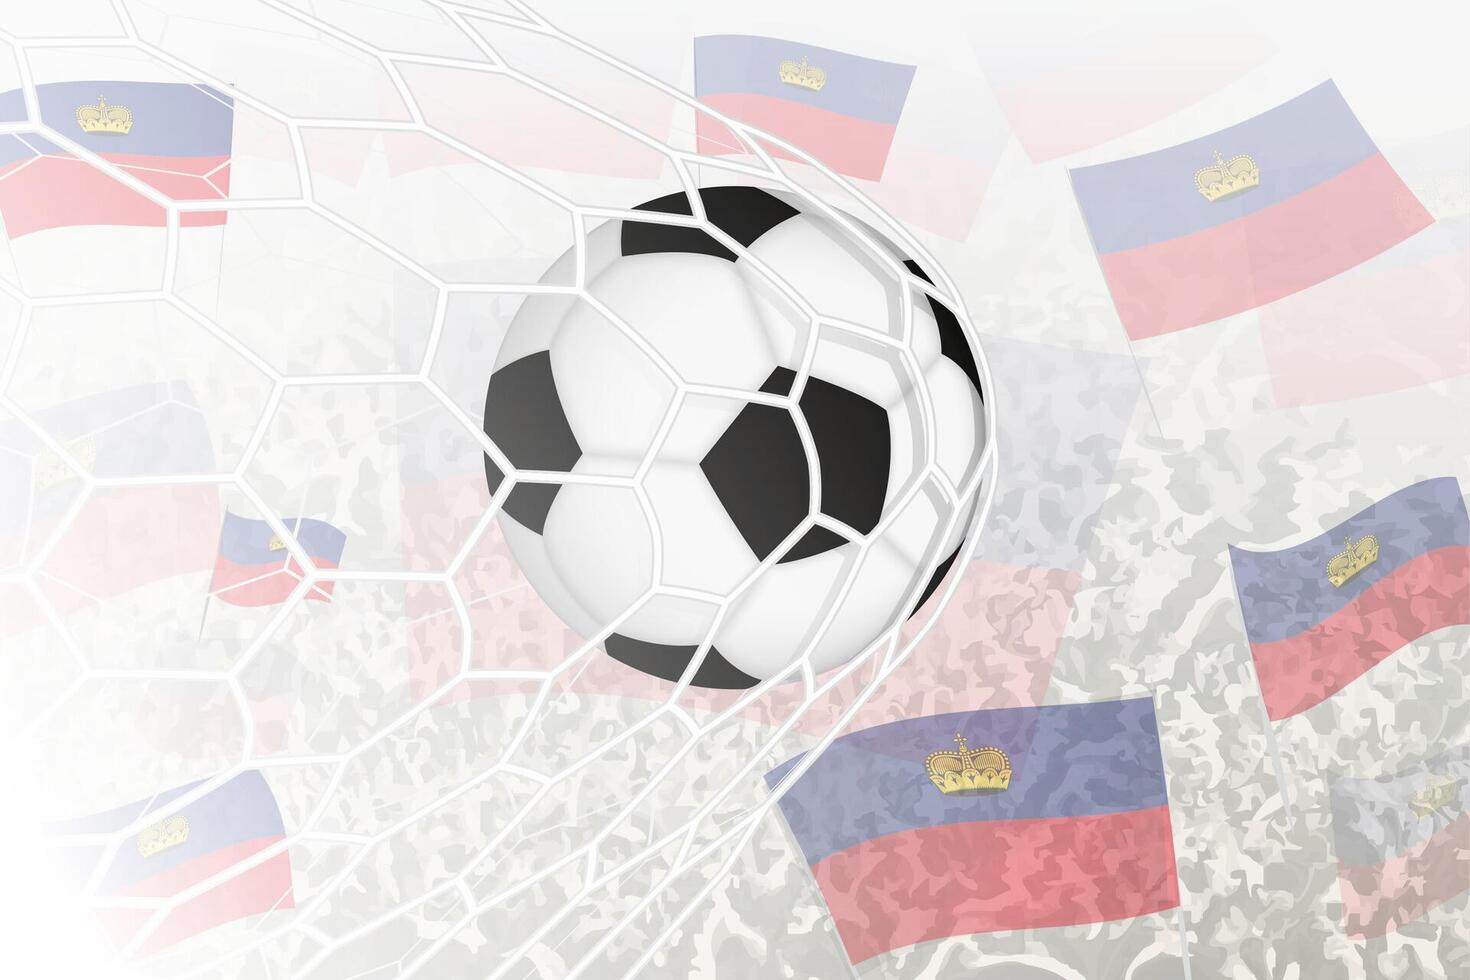 nationaal Amerikaans voetbal team van Liechtenstein scoorde doel. bal in doel netto, terwijl Amerikaans voetbal supporters zijn golvend de Liechtenstein vlag in de achtergrond. vector